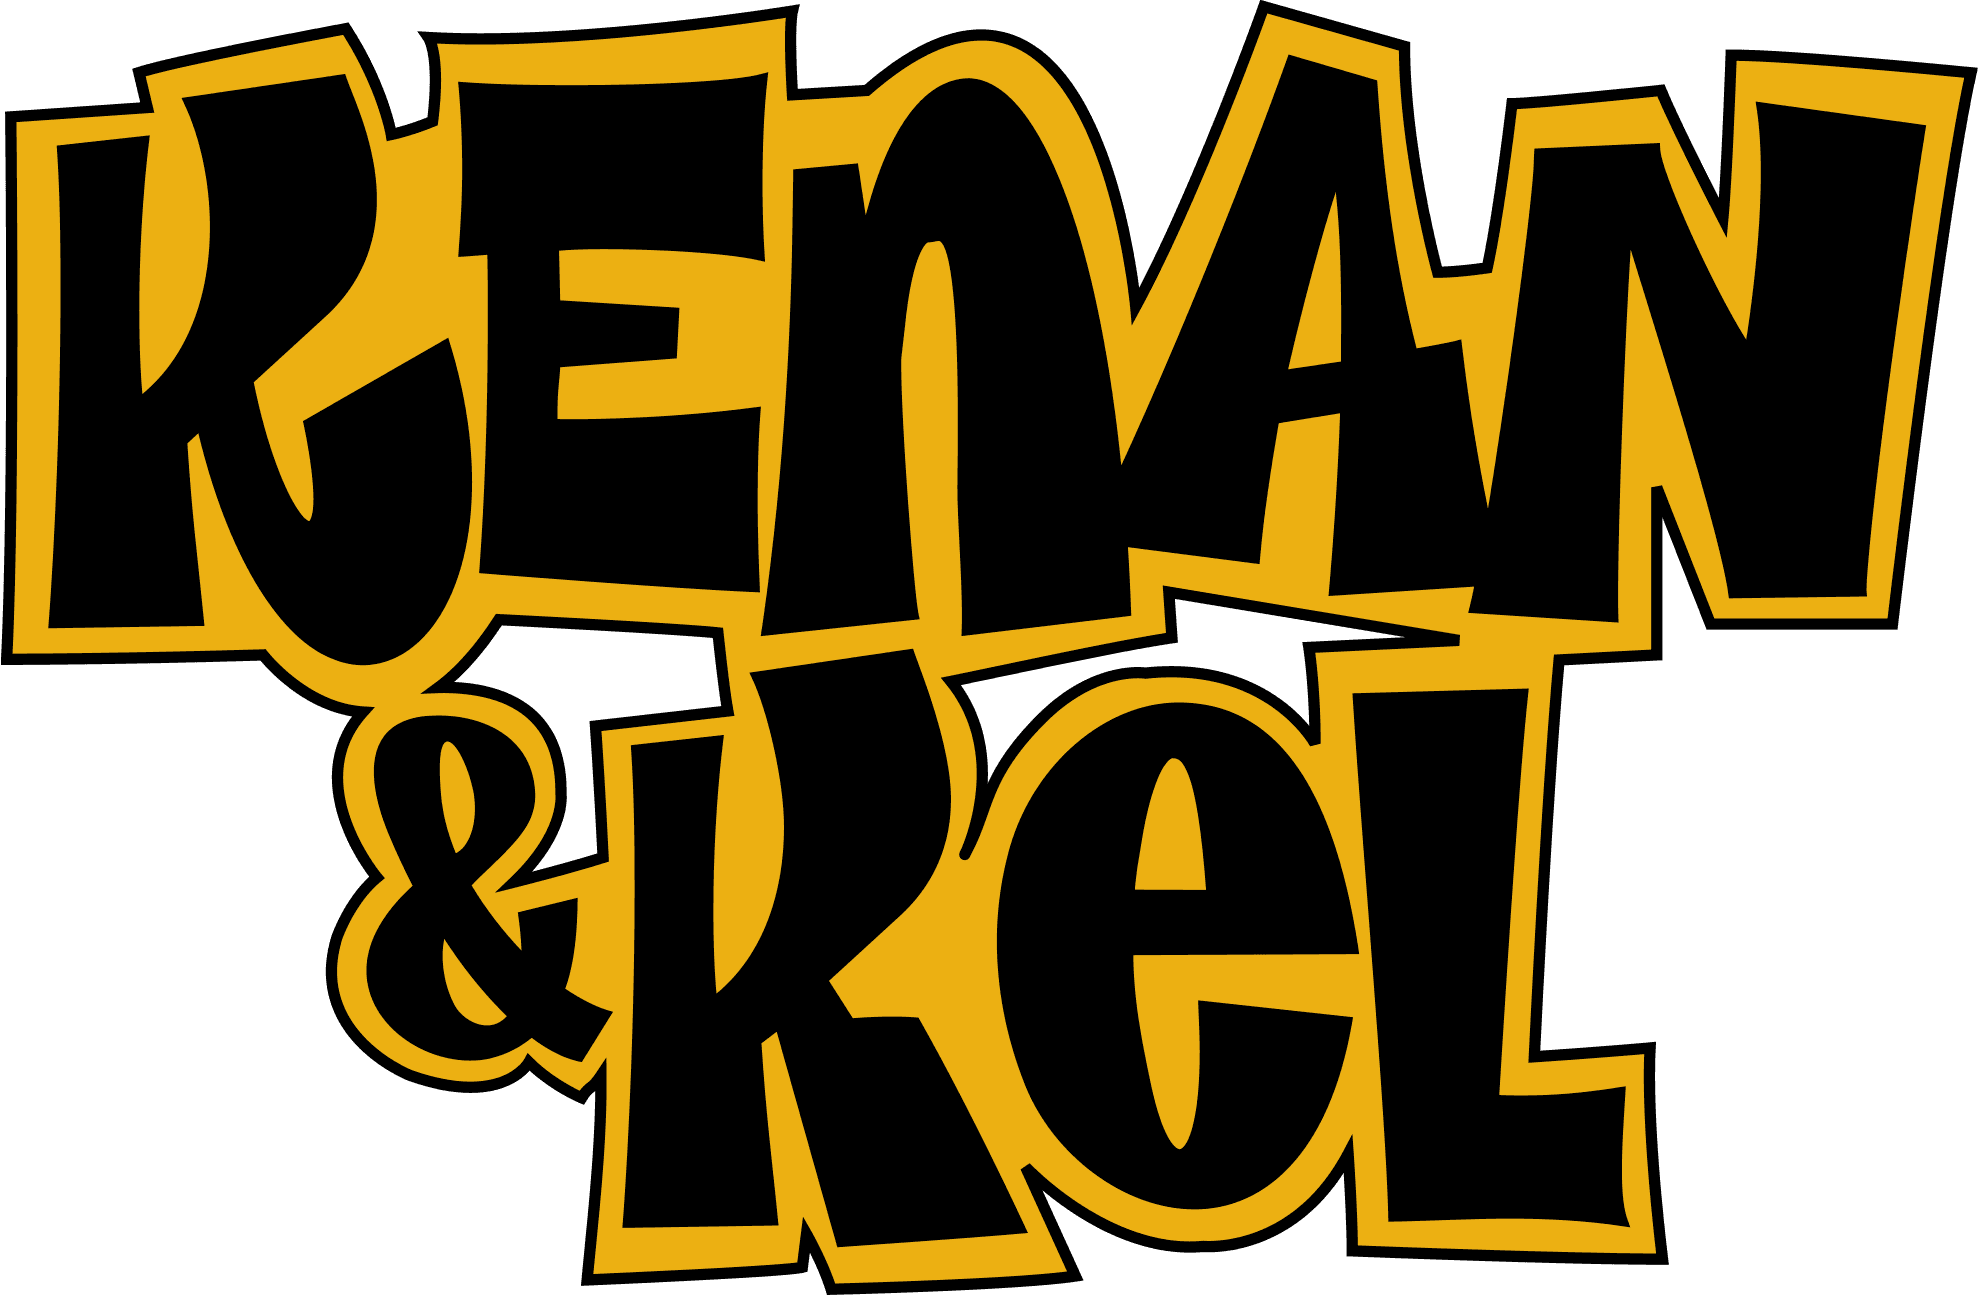 Kenan & Kel logo